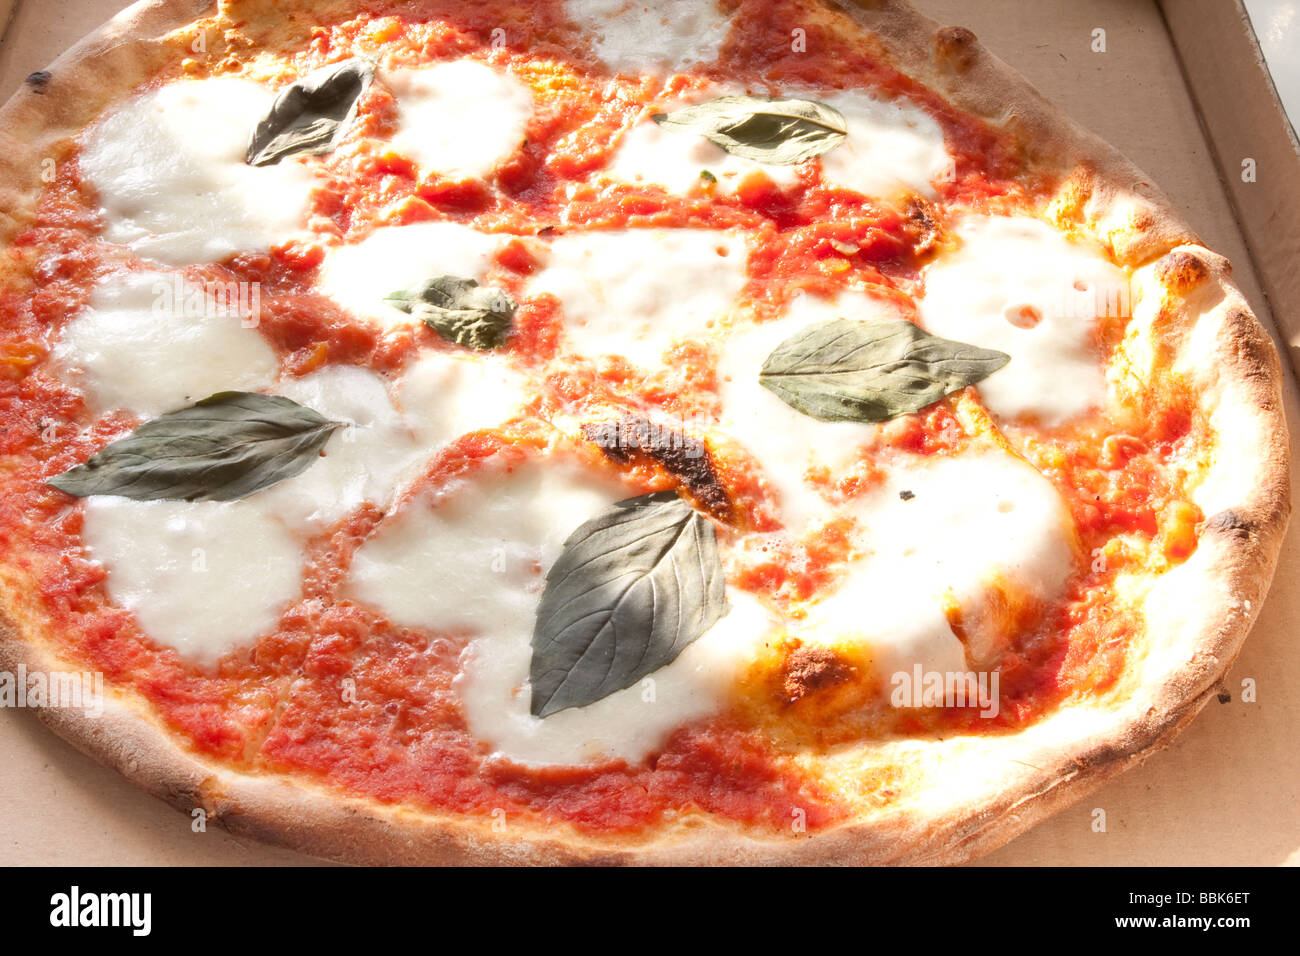 Authentische Margherita-Pizza mit Basilikum und Mozzarella auf einer goldenen Kruste. Stockfoto